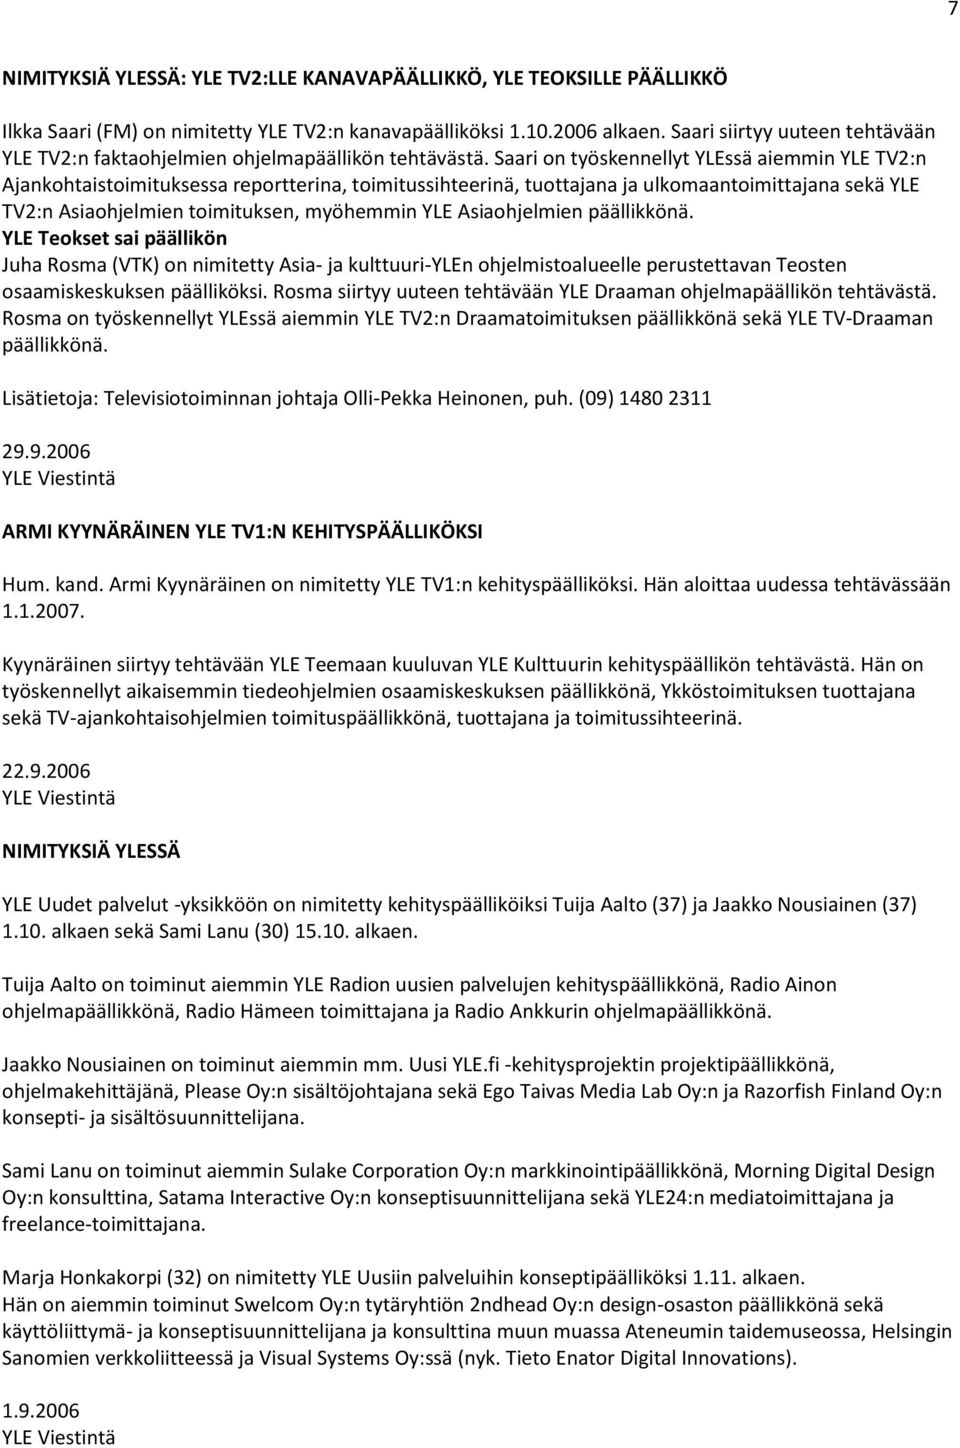 Saari on työskennellyt YLEssä aiemmin YLE TV2:n Ajankohtaistoimituksessa reportterina, toimitussihteerinä, tuottajana ja ulkomaantoimittajana sekä YLE TV2:n Asiaohjelmien toimituksen, myöhemmin YLE